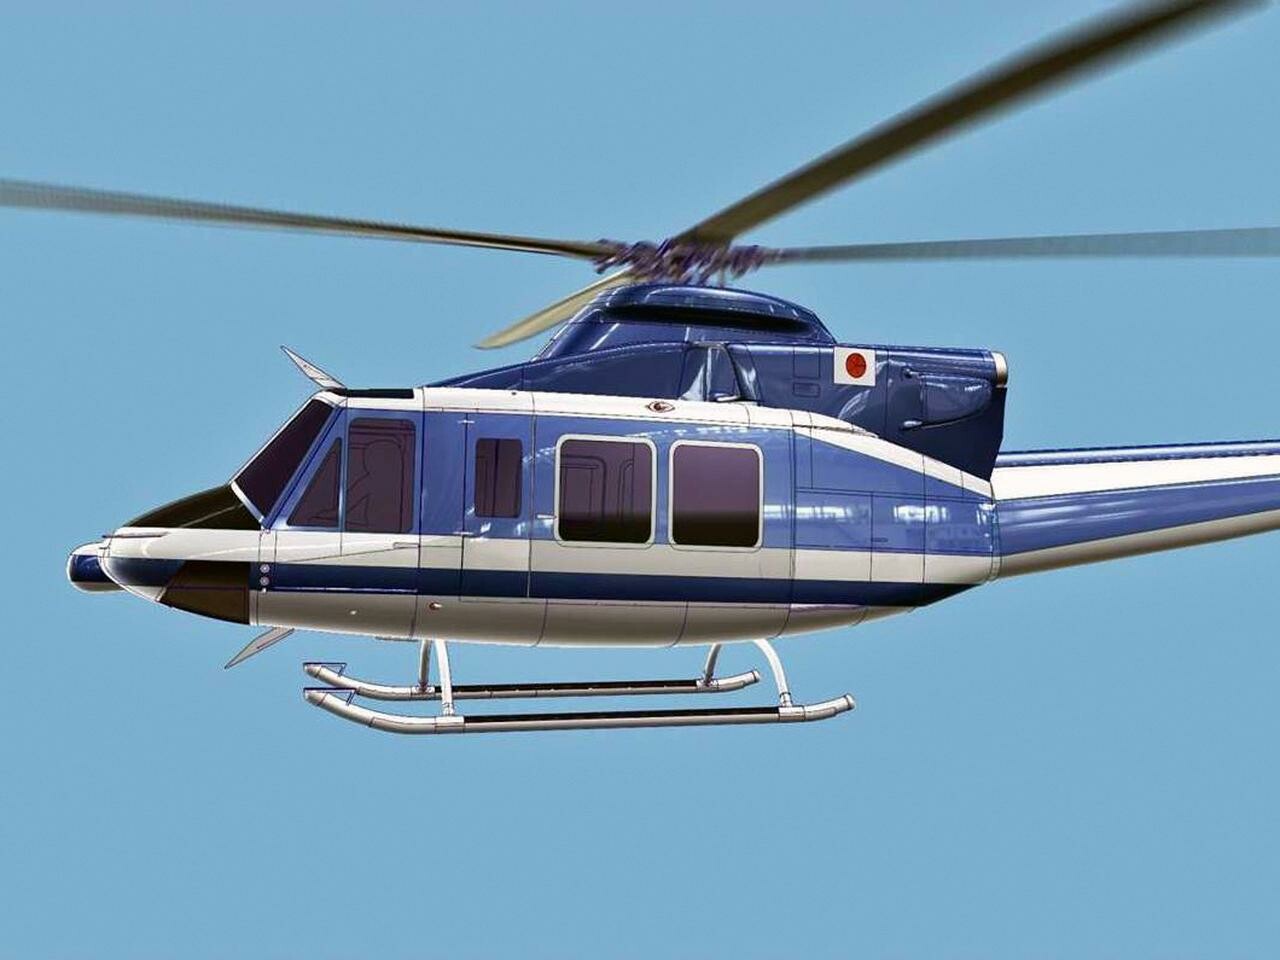 スバルとベルが共同開発したヘリコプターが警察庁から世界初受注を獲得